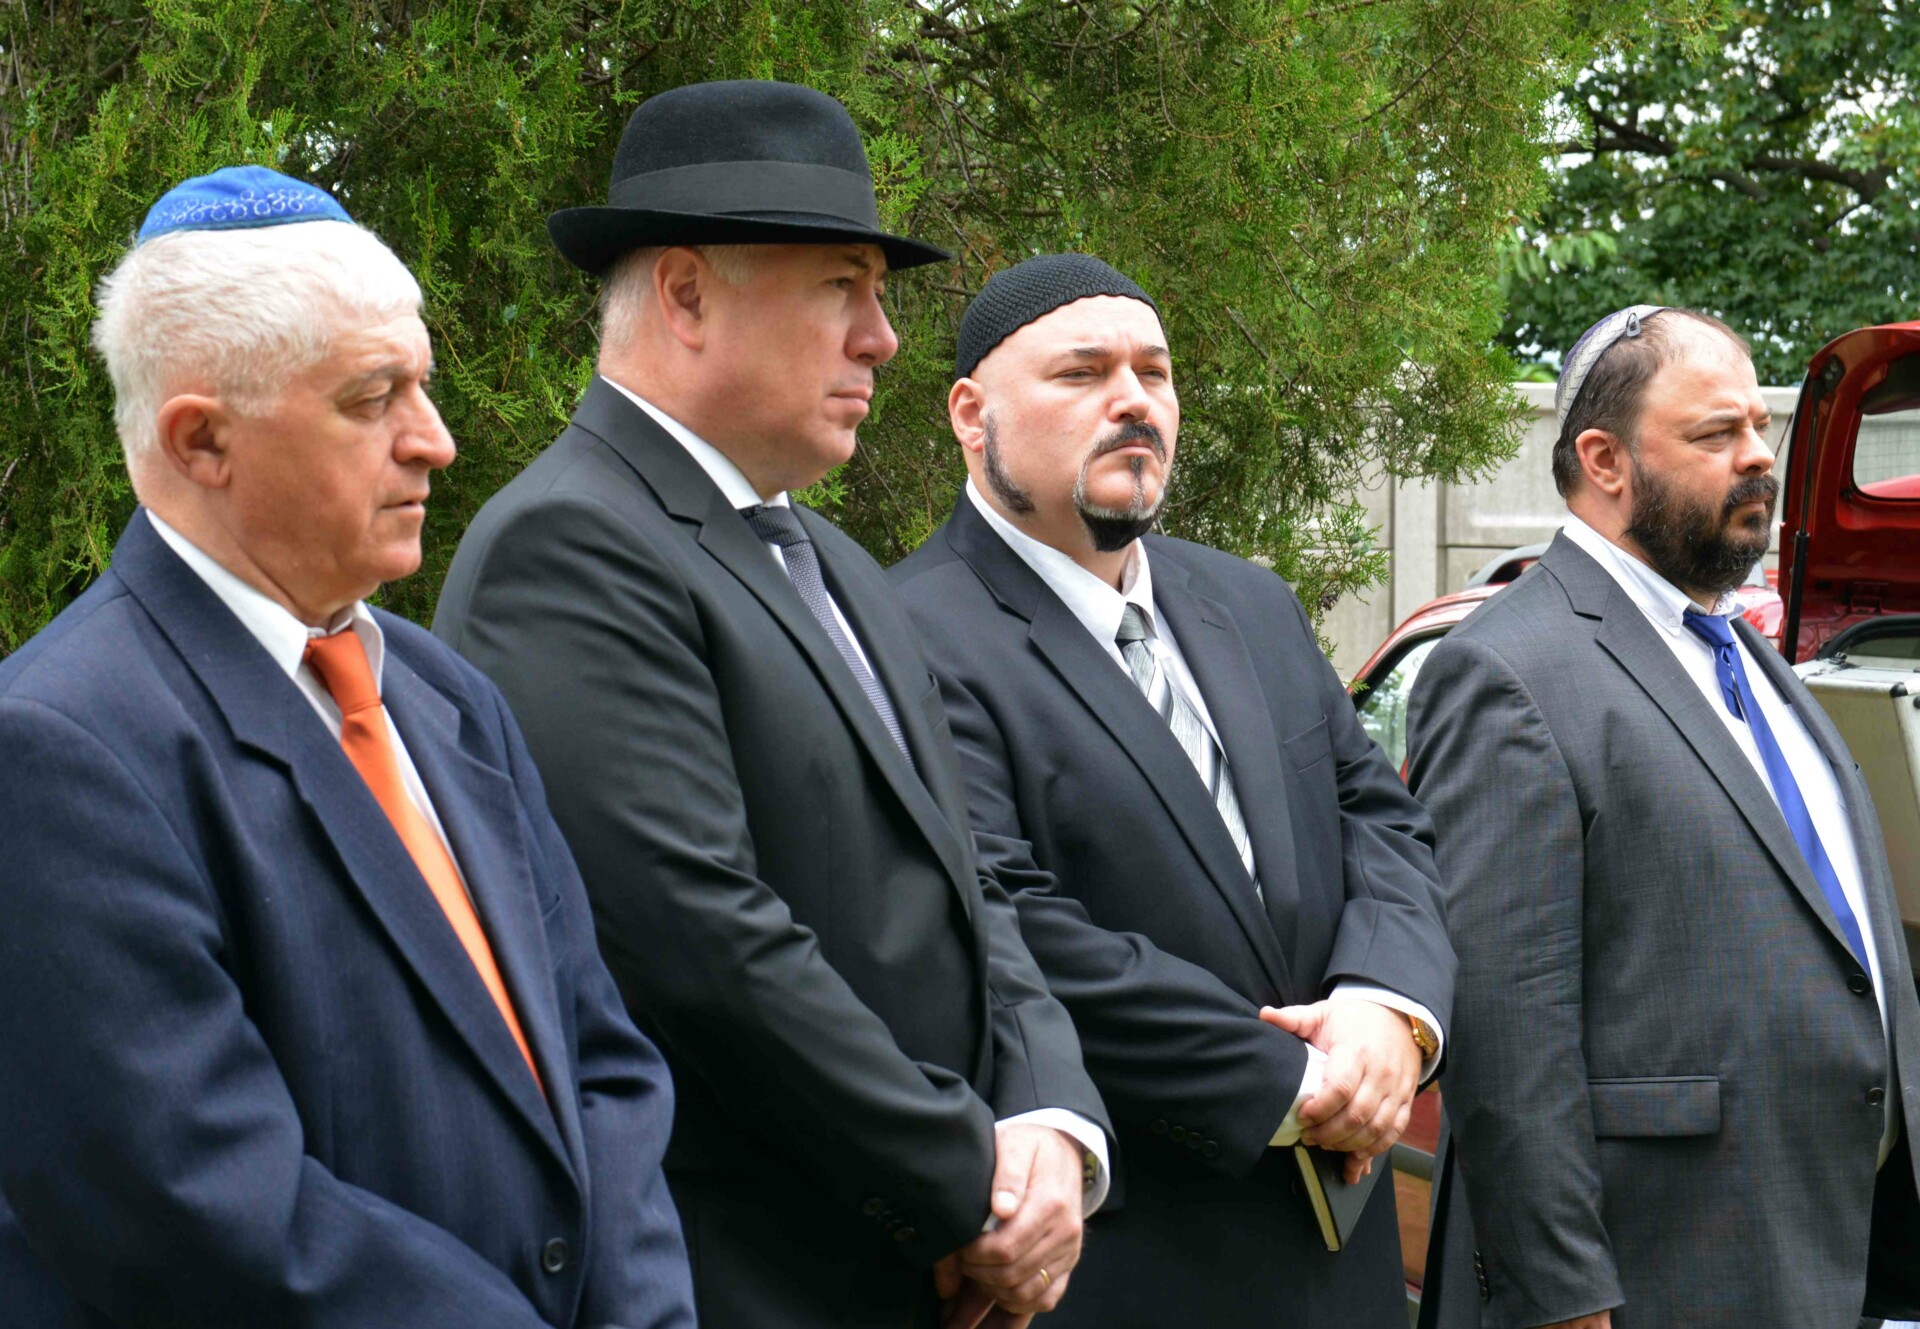 Megemlékeztek a zsidó mártírokról az Avasi temetőben, Kriza Ákos is ott volt